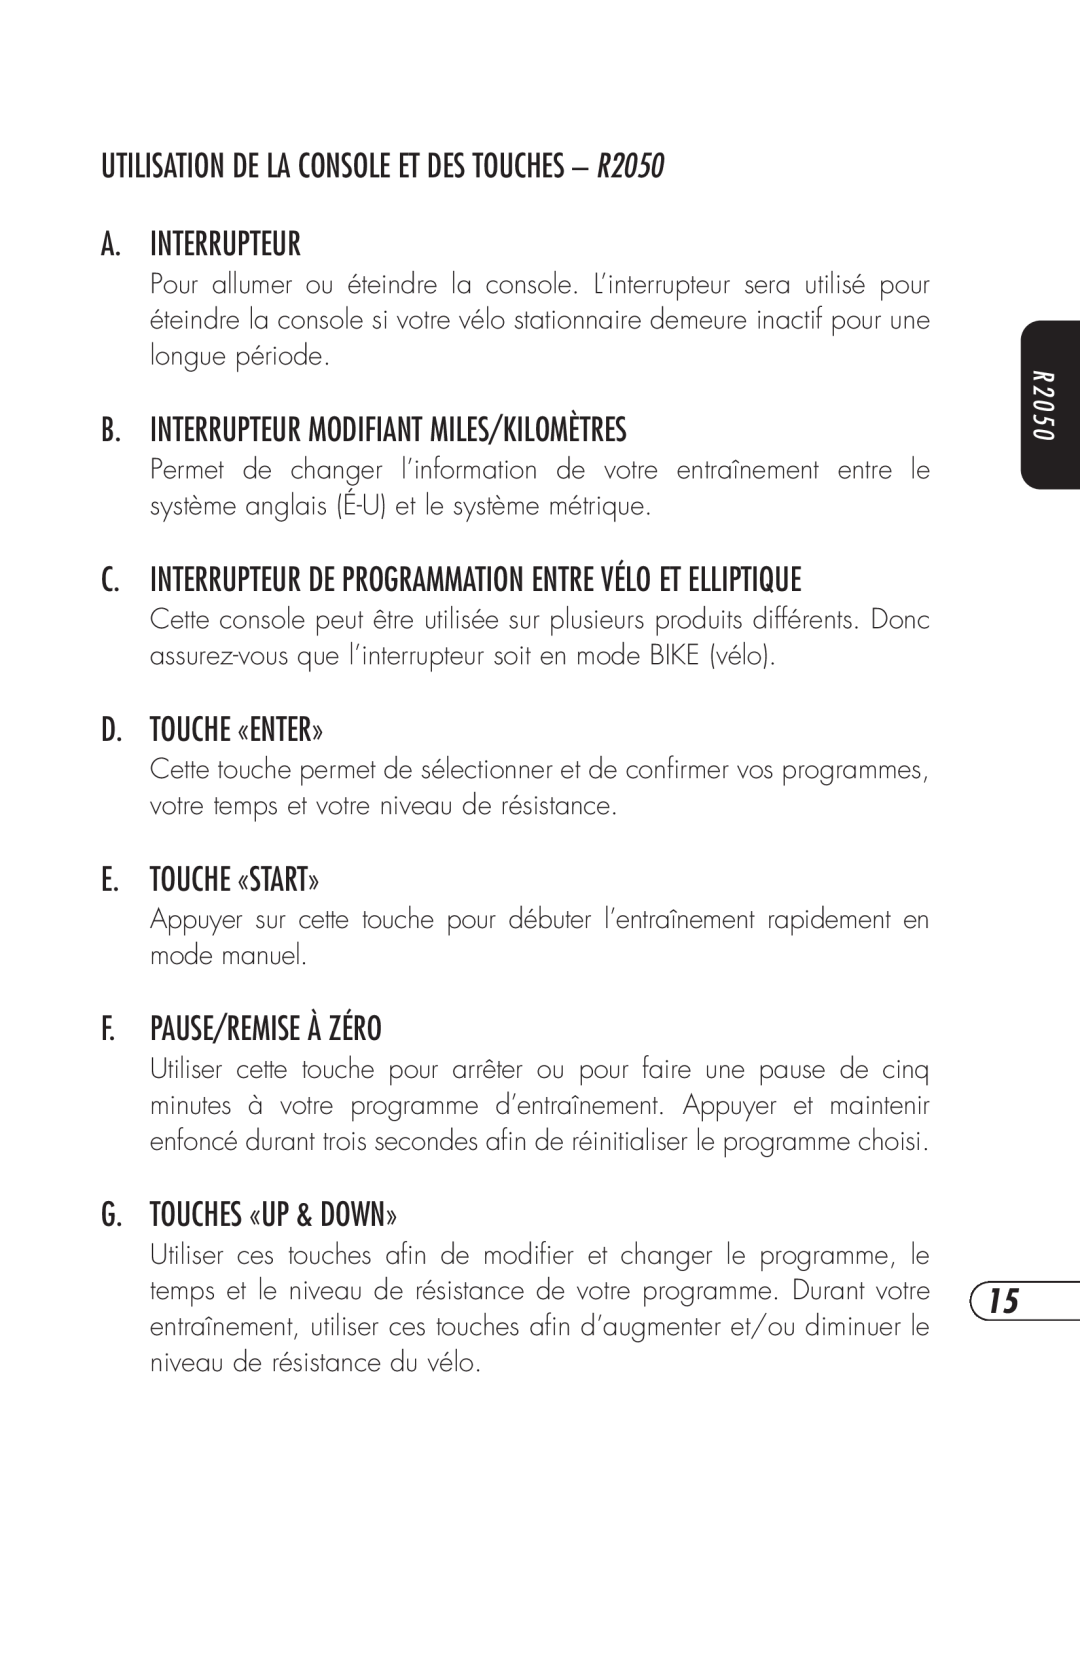 Vision Fitness E3100 manual UTILISATION DE LA CONSOLE ET DES TOUCHES - R2050 A. INTERRUPTEUR, D. Touche «Enter», R 2 0 5 